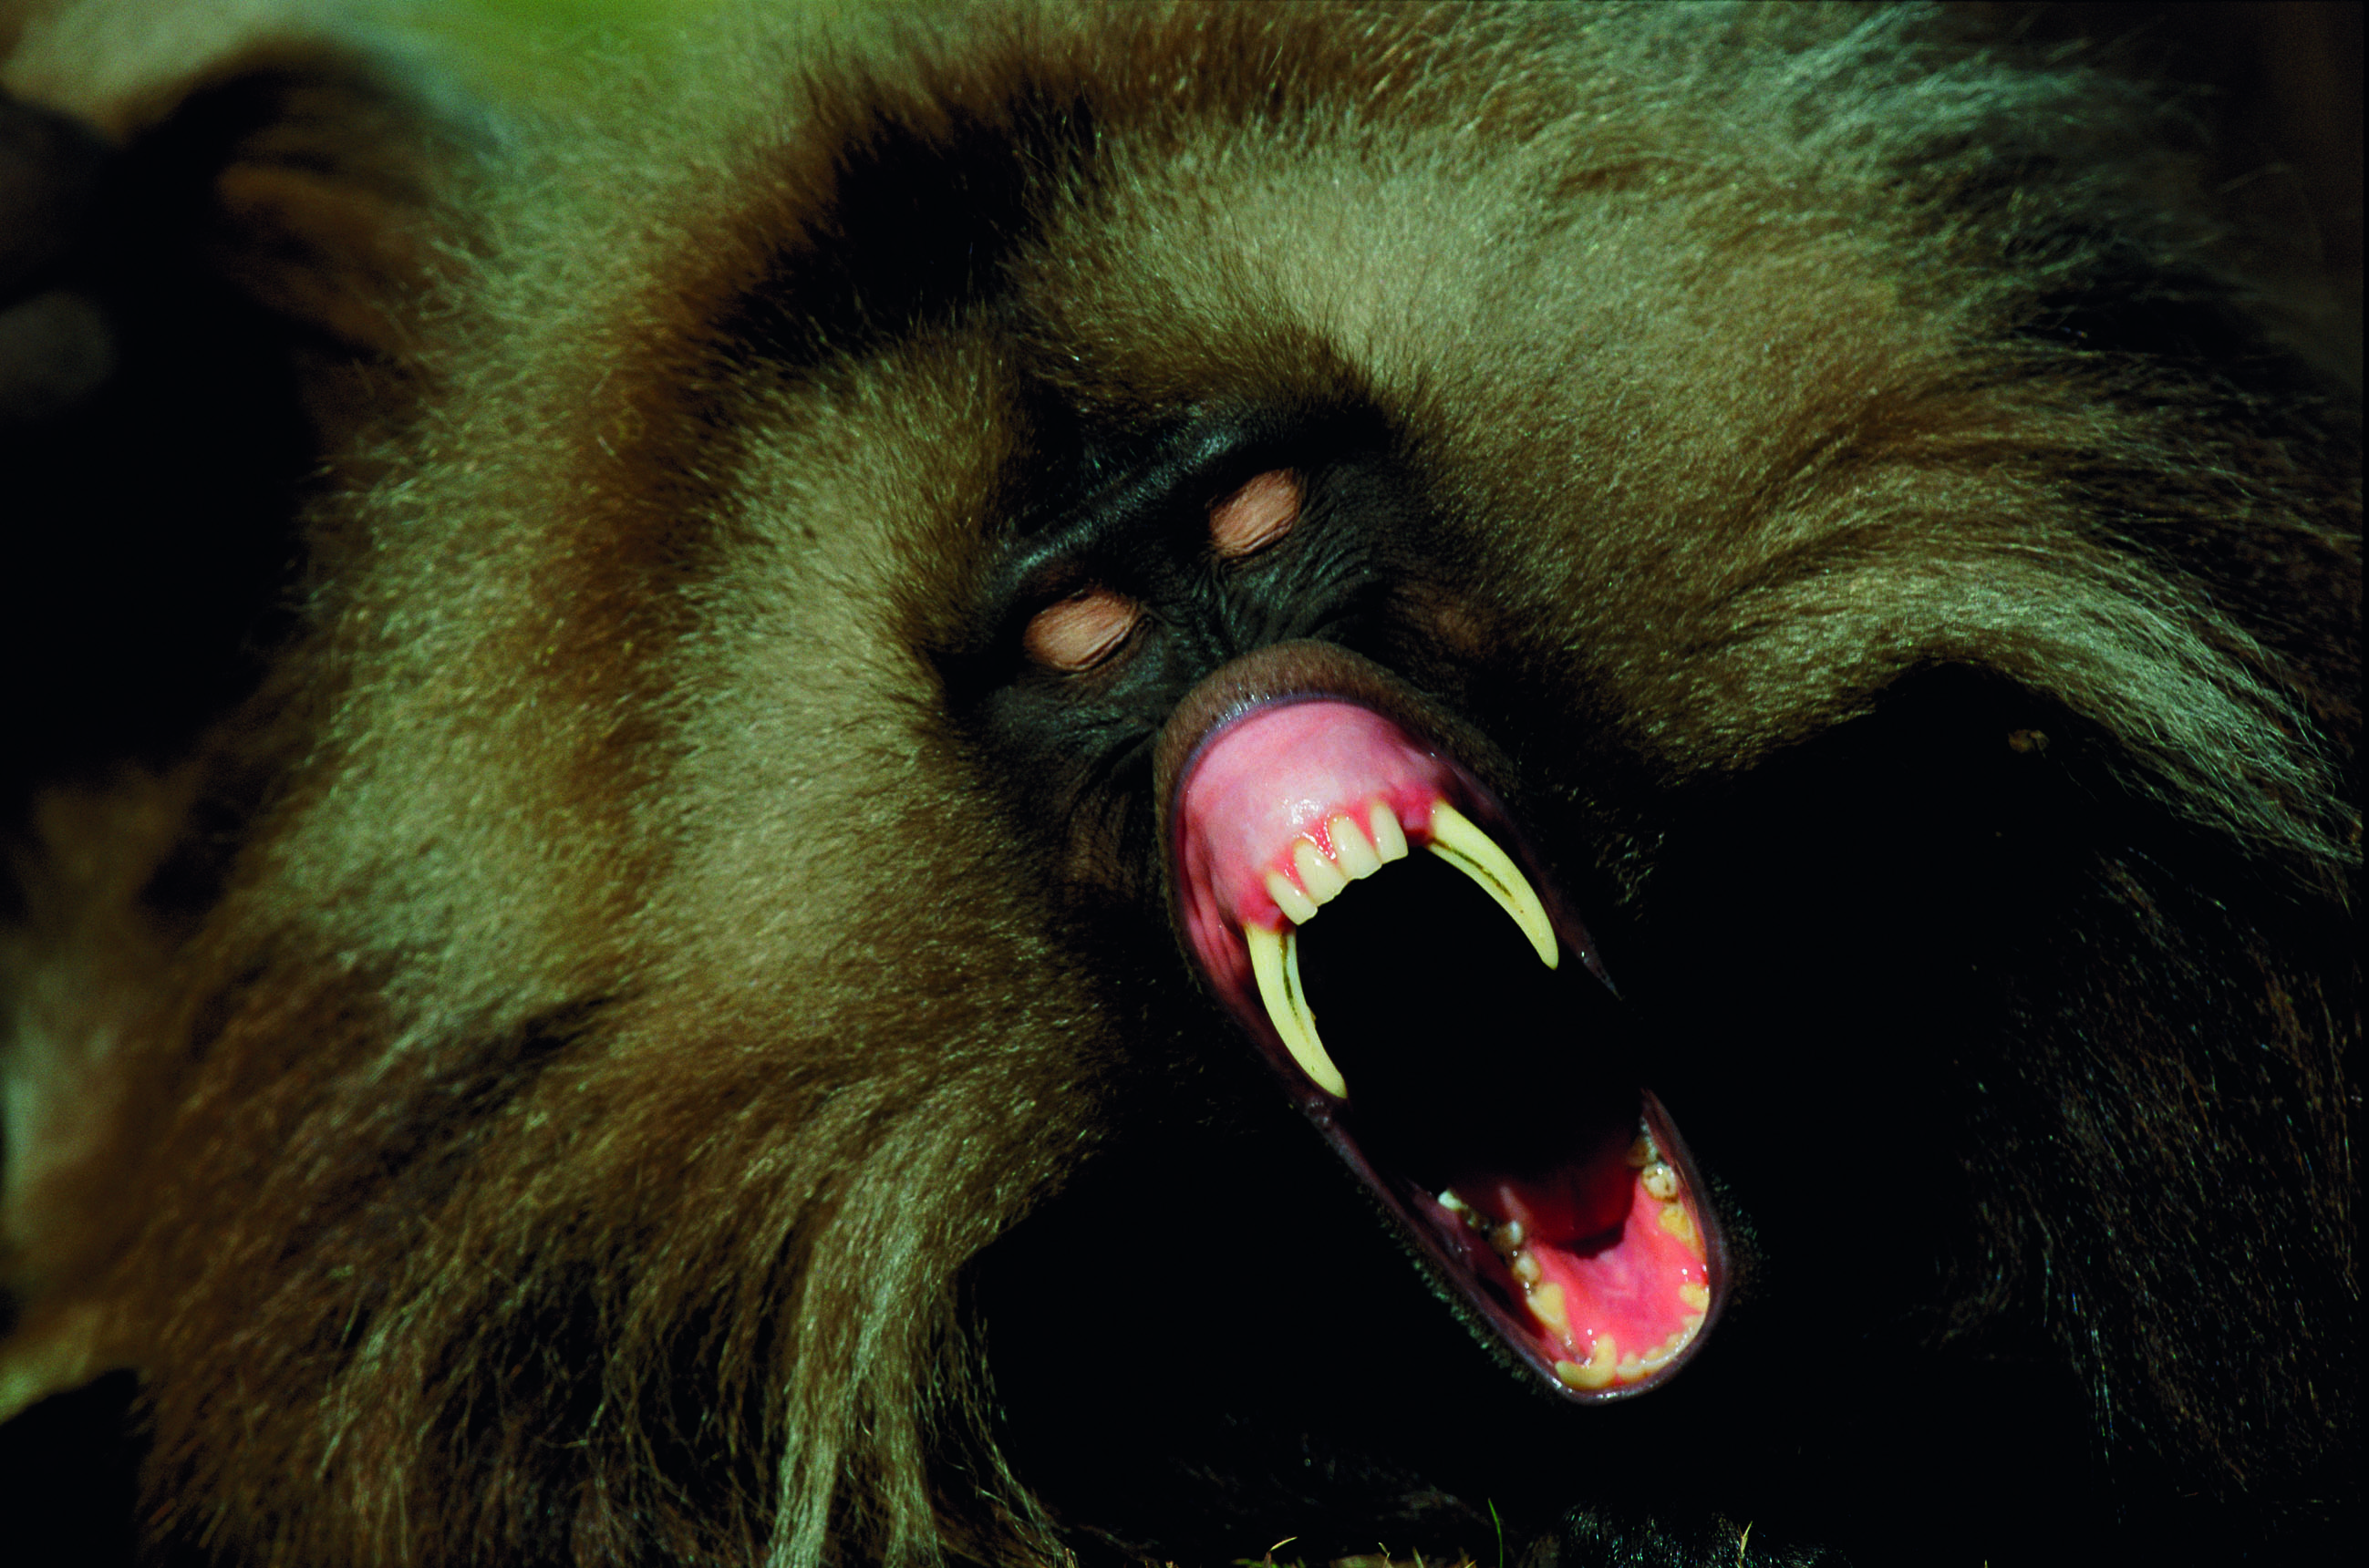 Michael Nichols
Parco nazionale del Semien, Etiopia | 2002
Il babbuino Gelada, che di solito si accontenta di mangiare l’erba delle praterie, ha comunque due canini decisamente pronunciati.